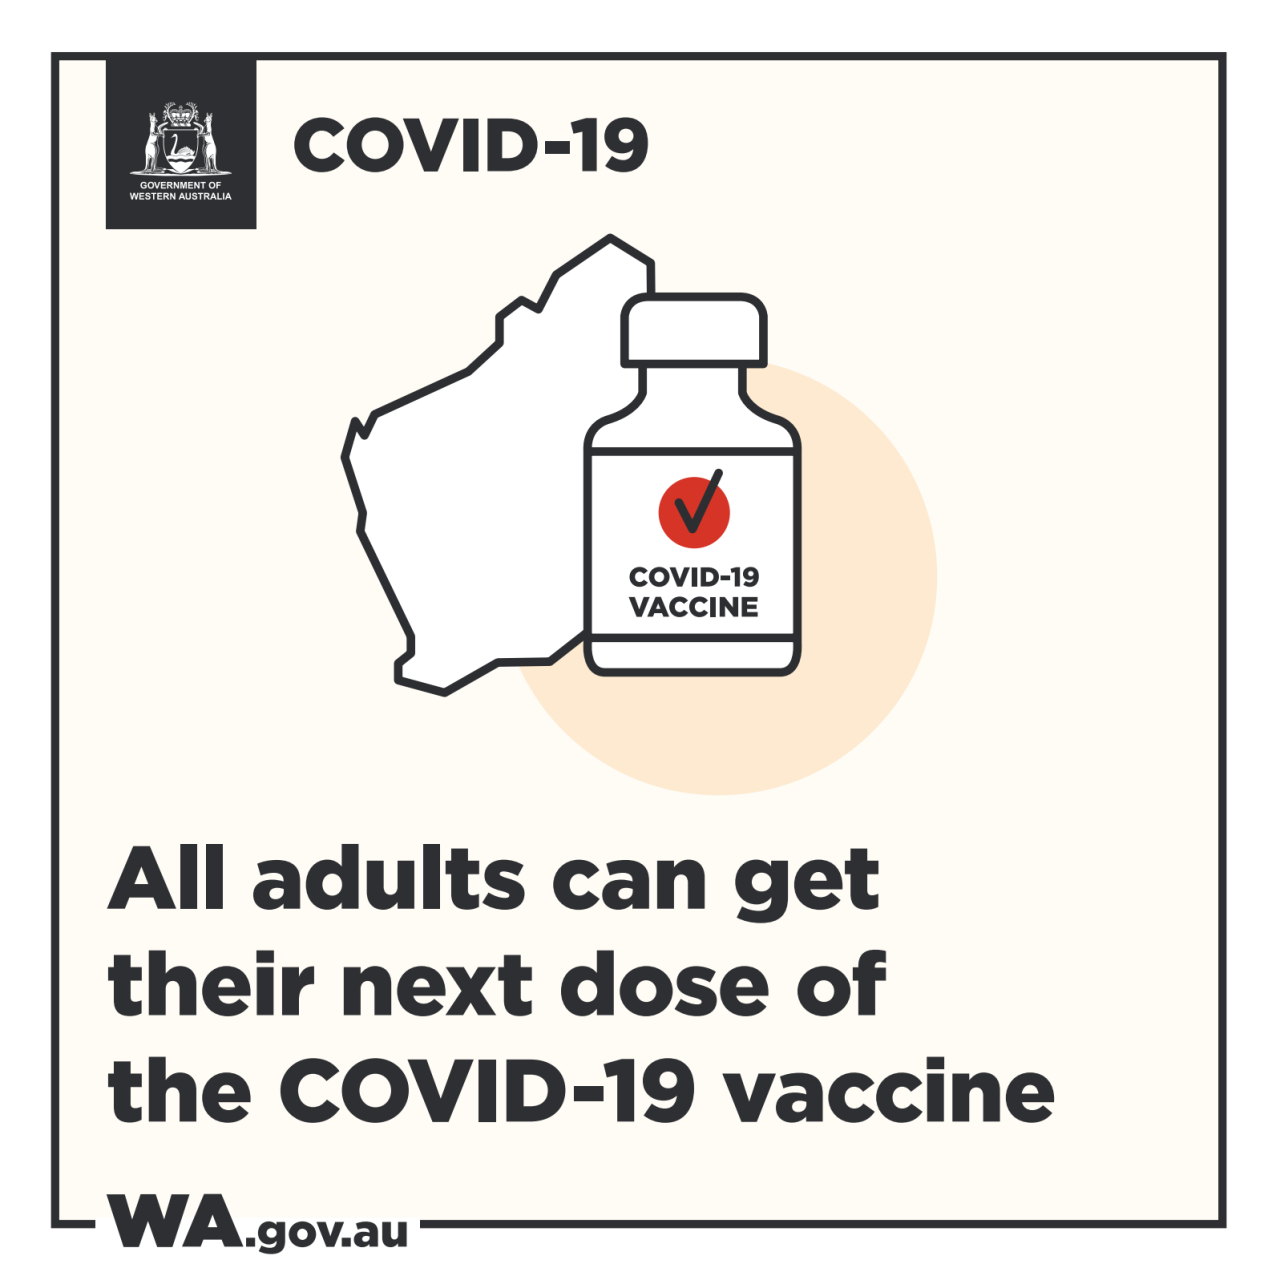 Next Dose of hte COVID-19 Vaccine